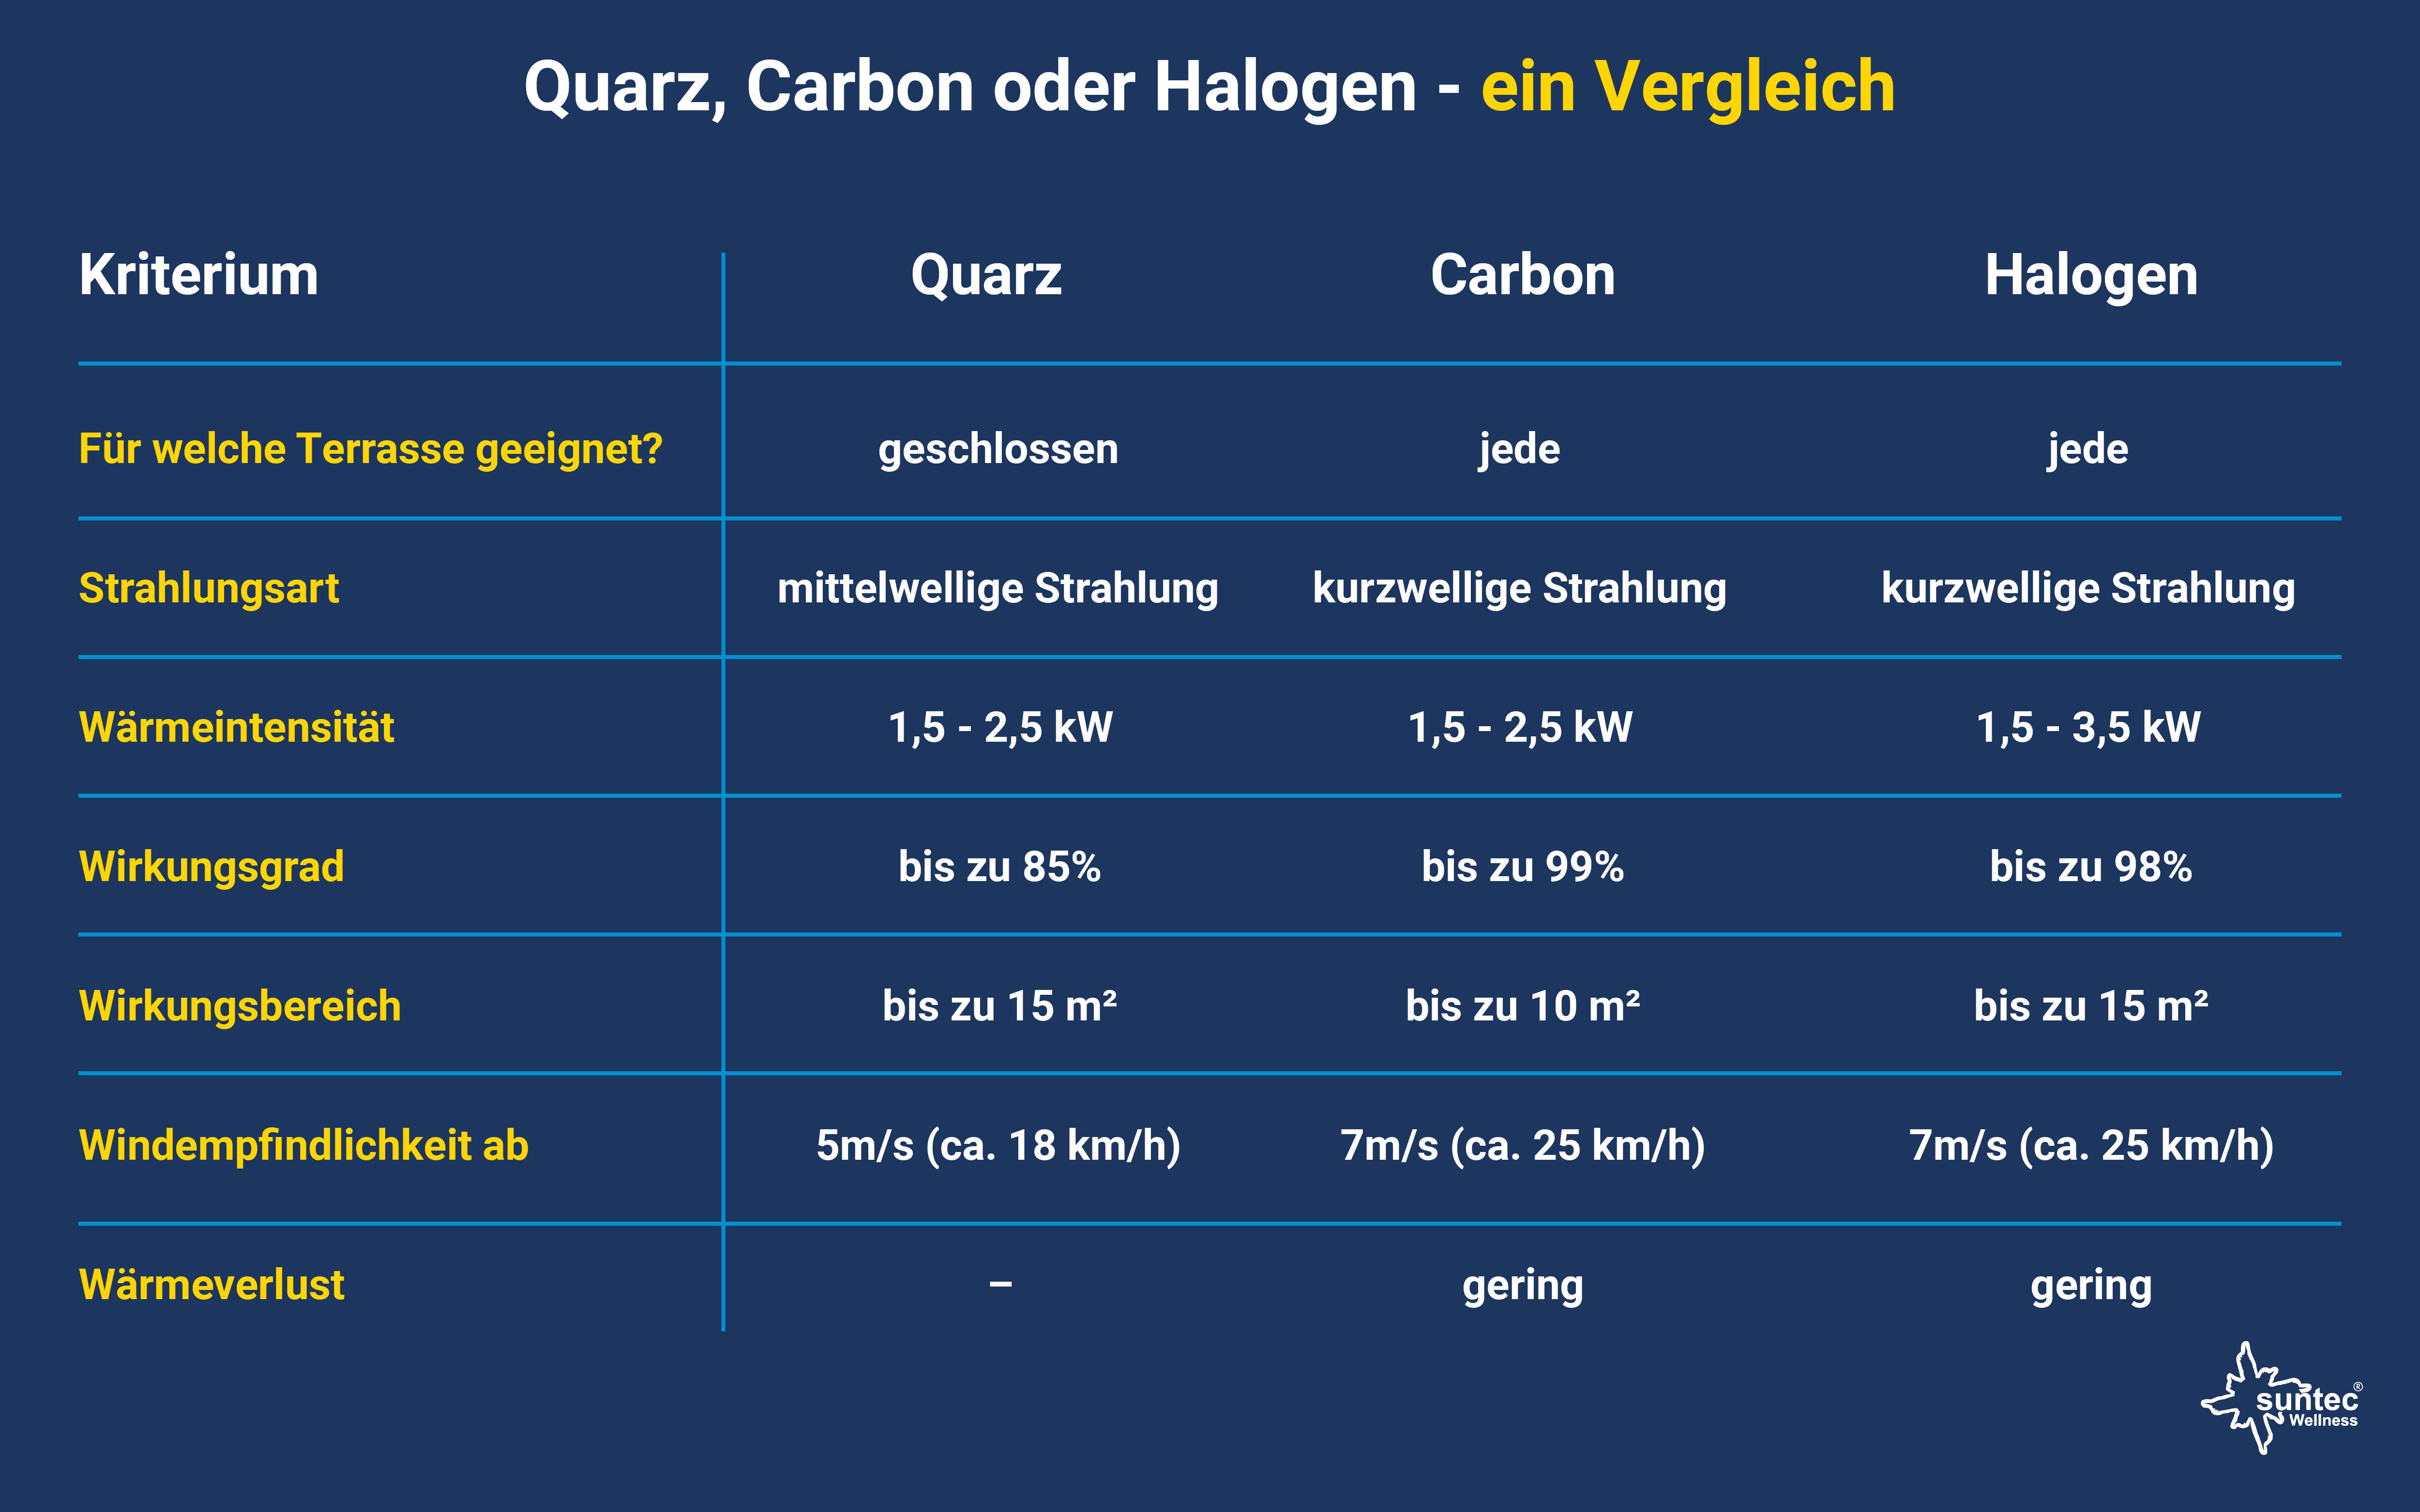 Quarz, Carbon und Halogen-Heizer im Vergleich